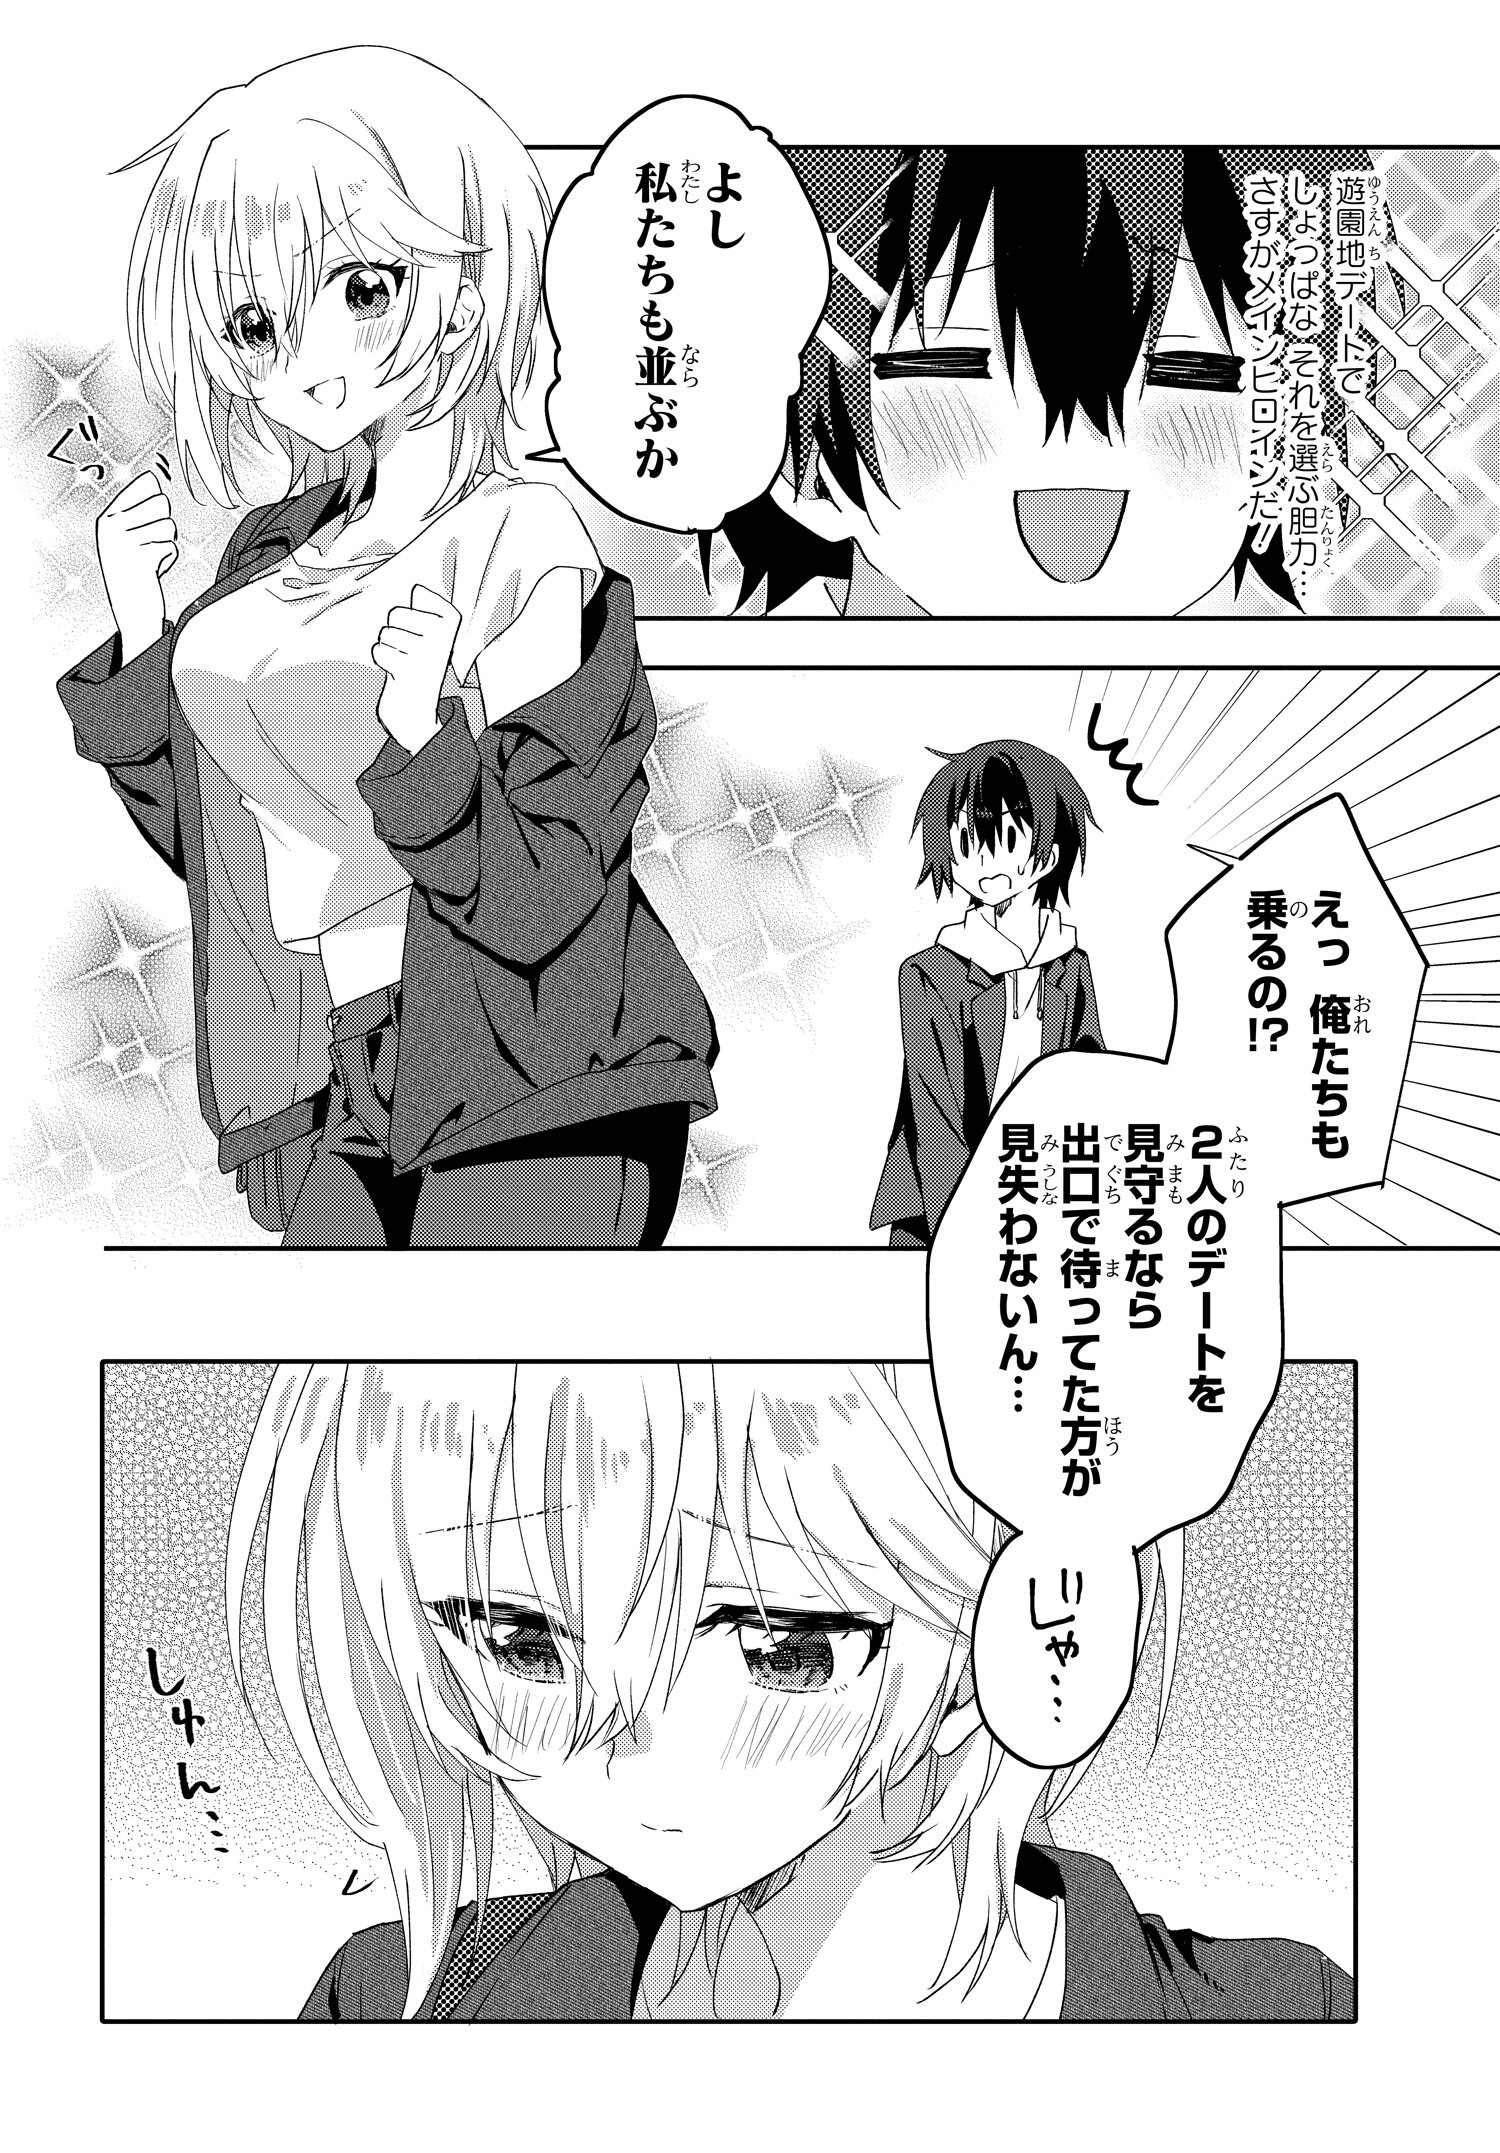 Romcom Manga ni Haitte Shimatta no de, Oshi no Make Heroine wo Zenryoku de Shiawase ni suru - Chapter 7.1 - Page 2